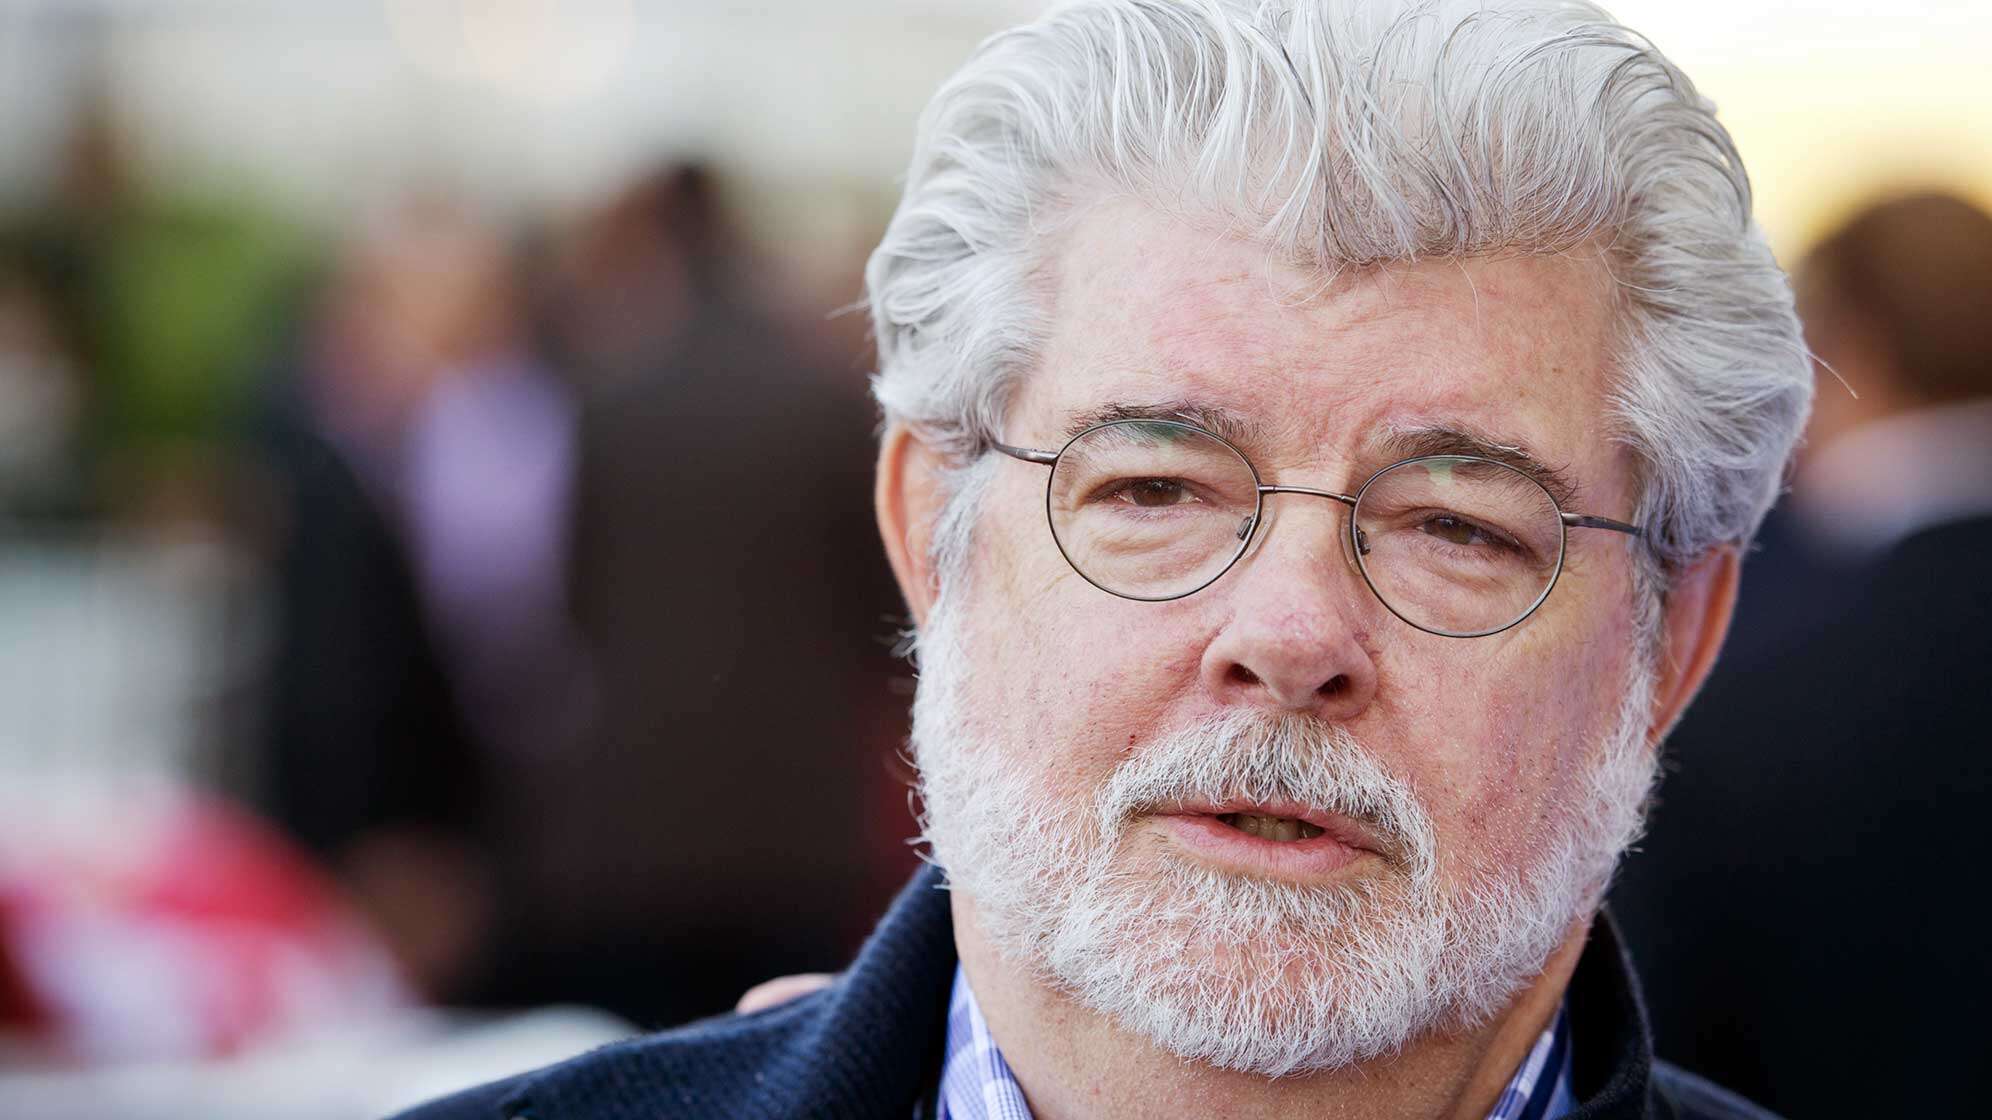 George Lucas mit grau-weißen Haaren, Bart und Brille